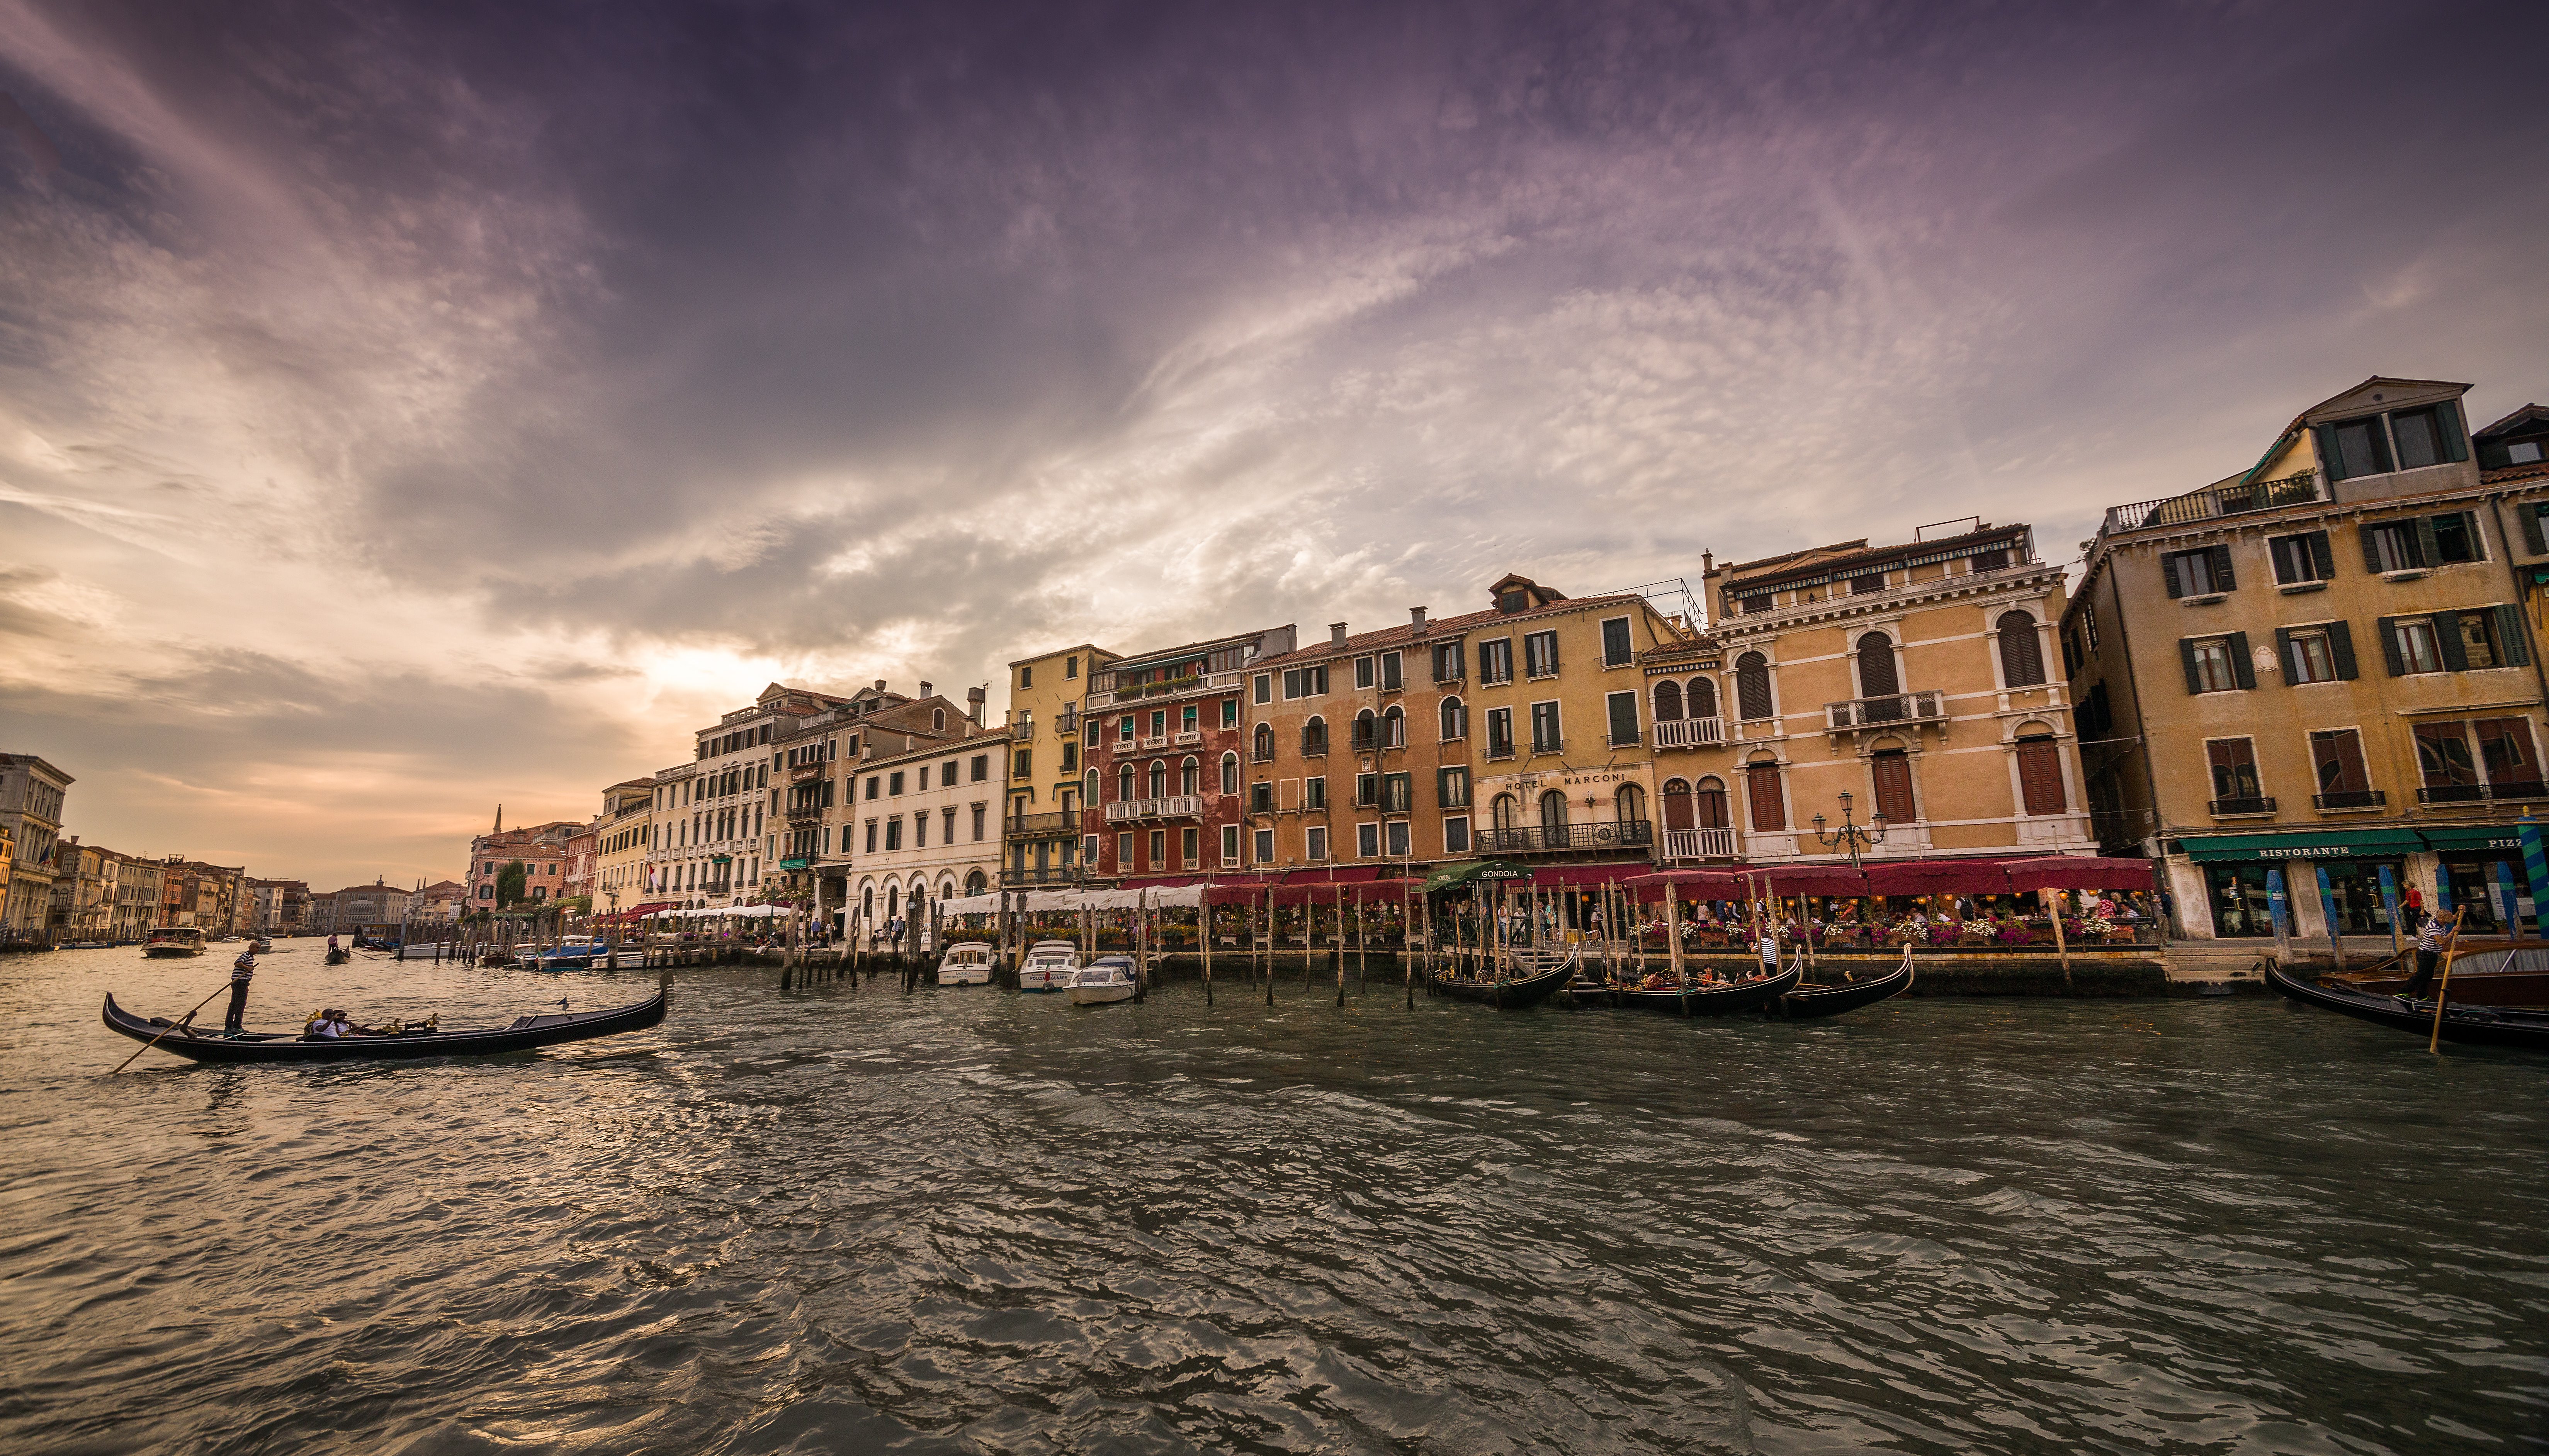 Read A Walk in Venice by Scott Kelby